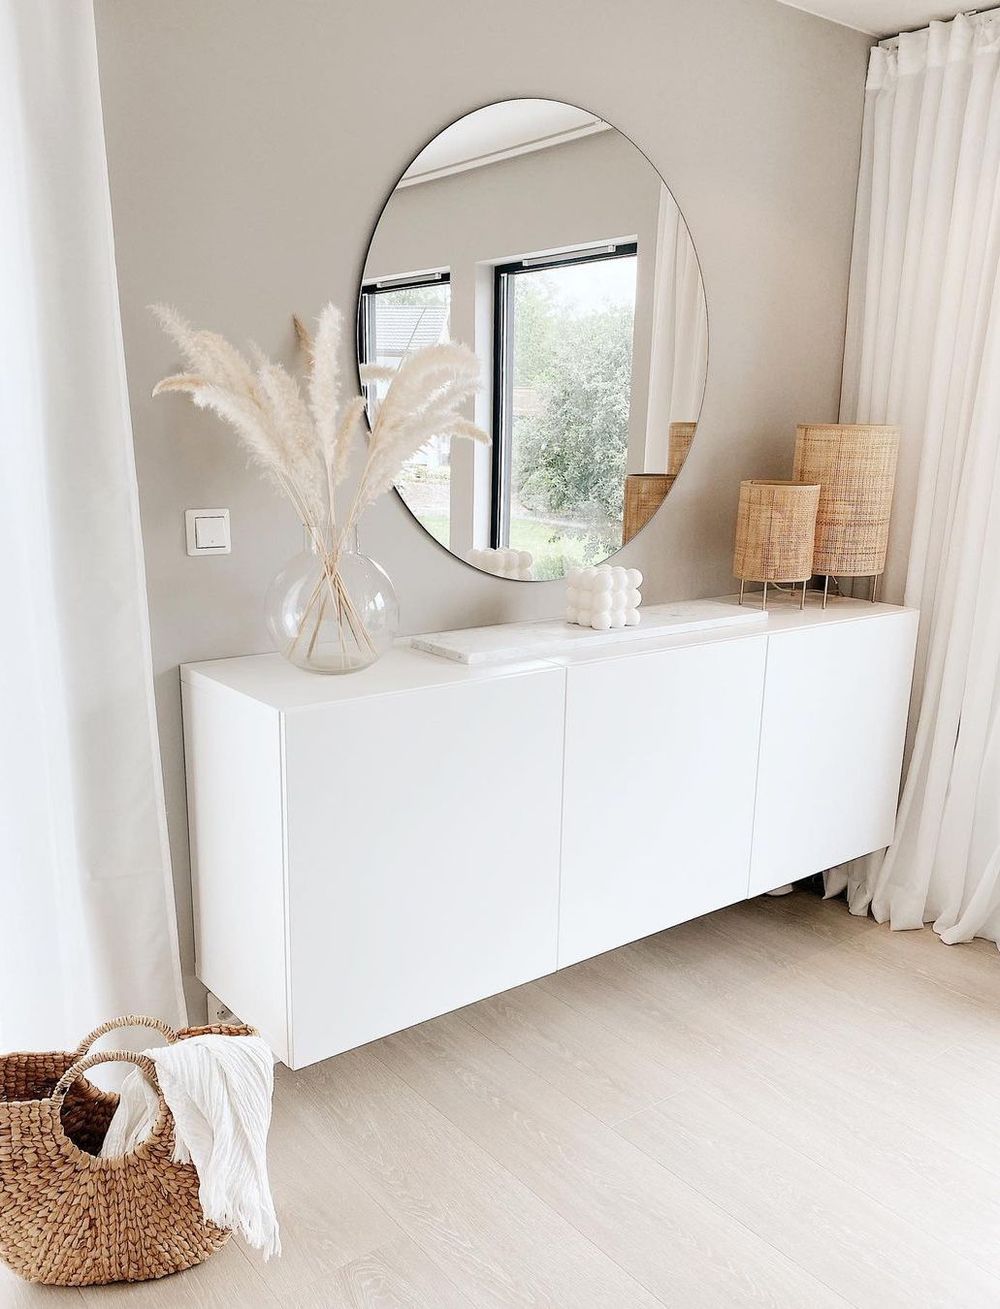 Uncluttered Simple Scandinavian Interior Design @casa_pedersen